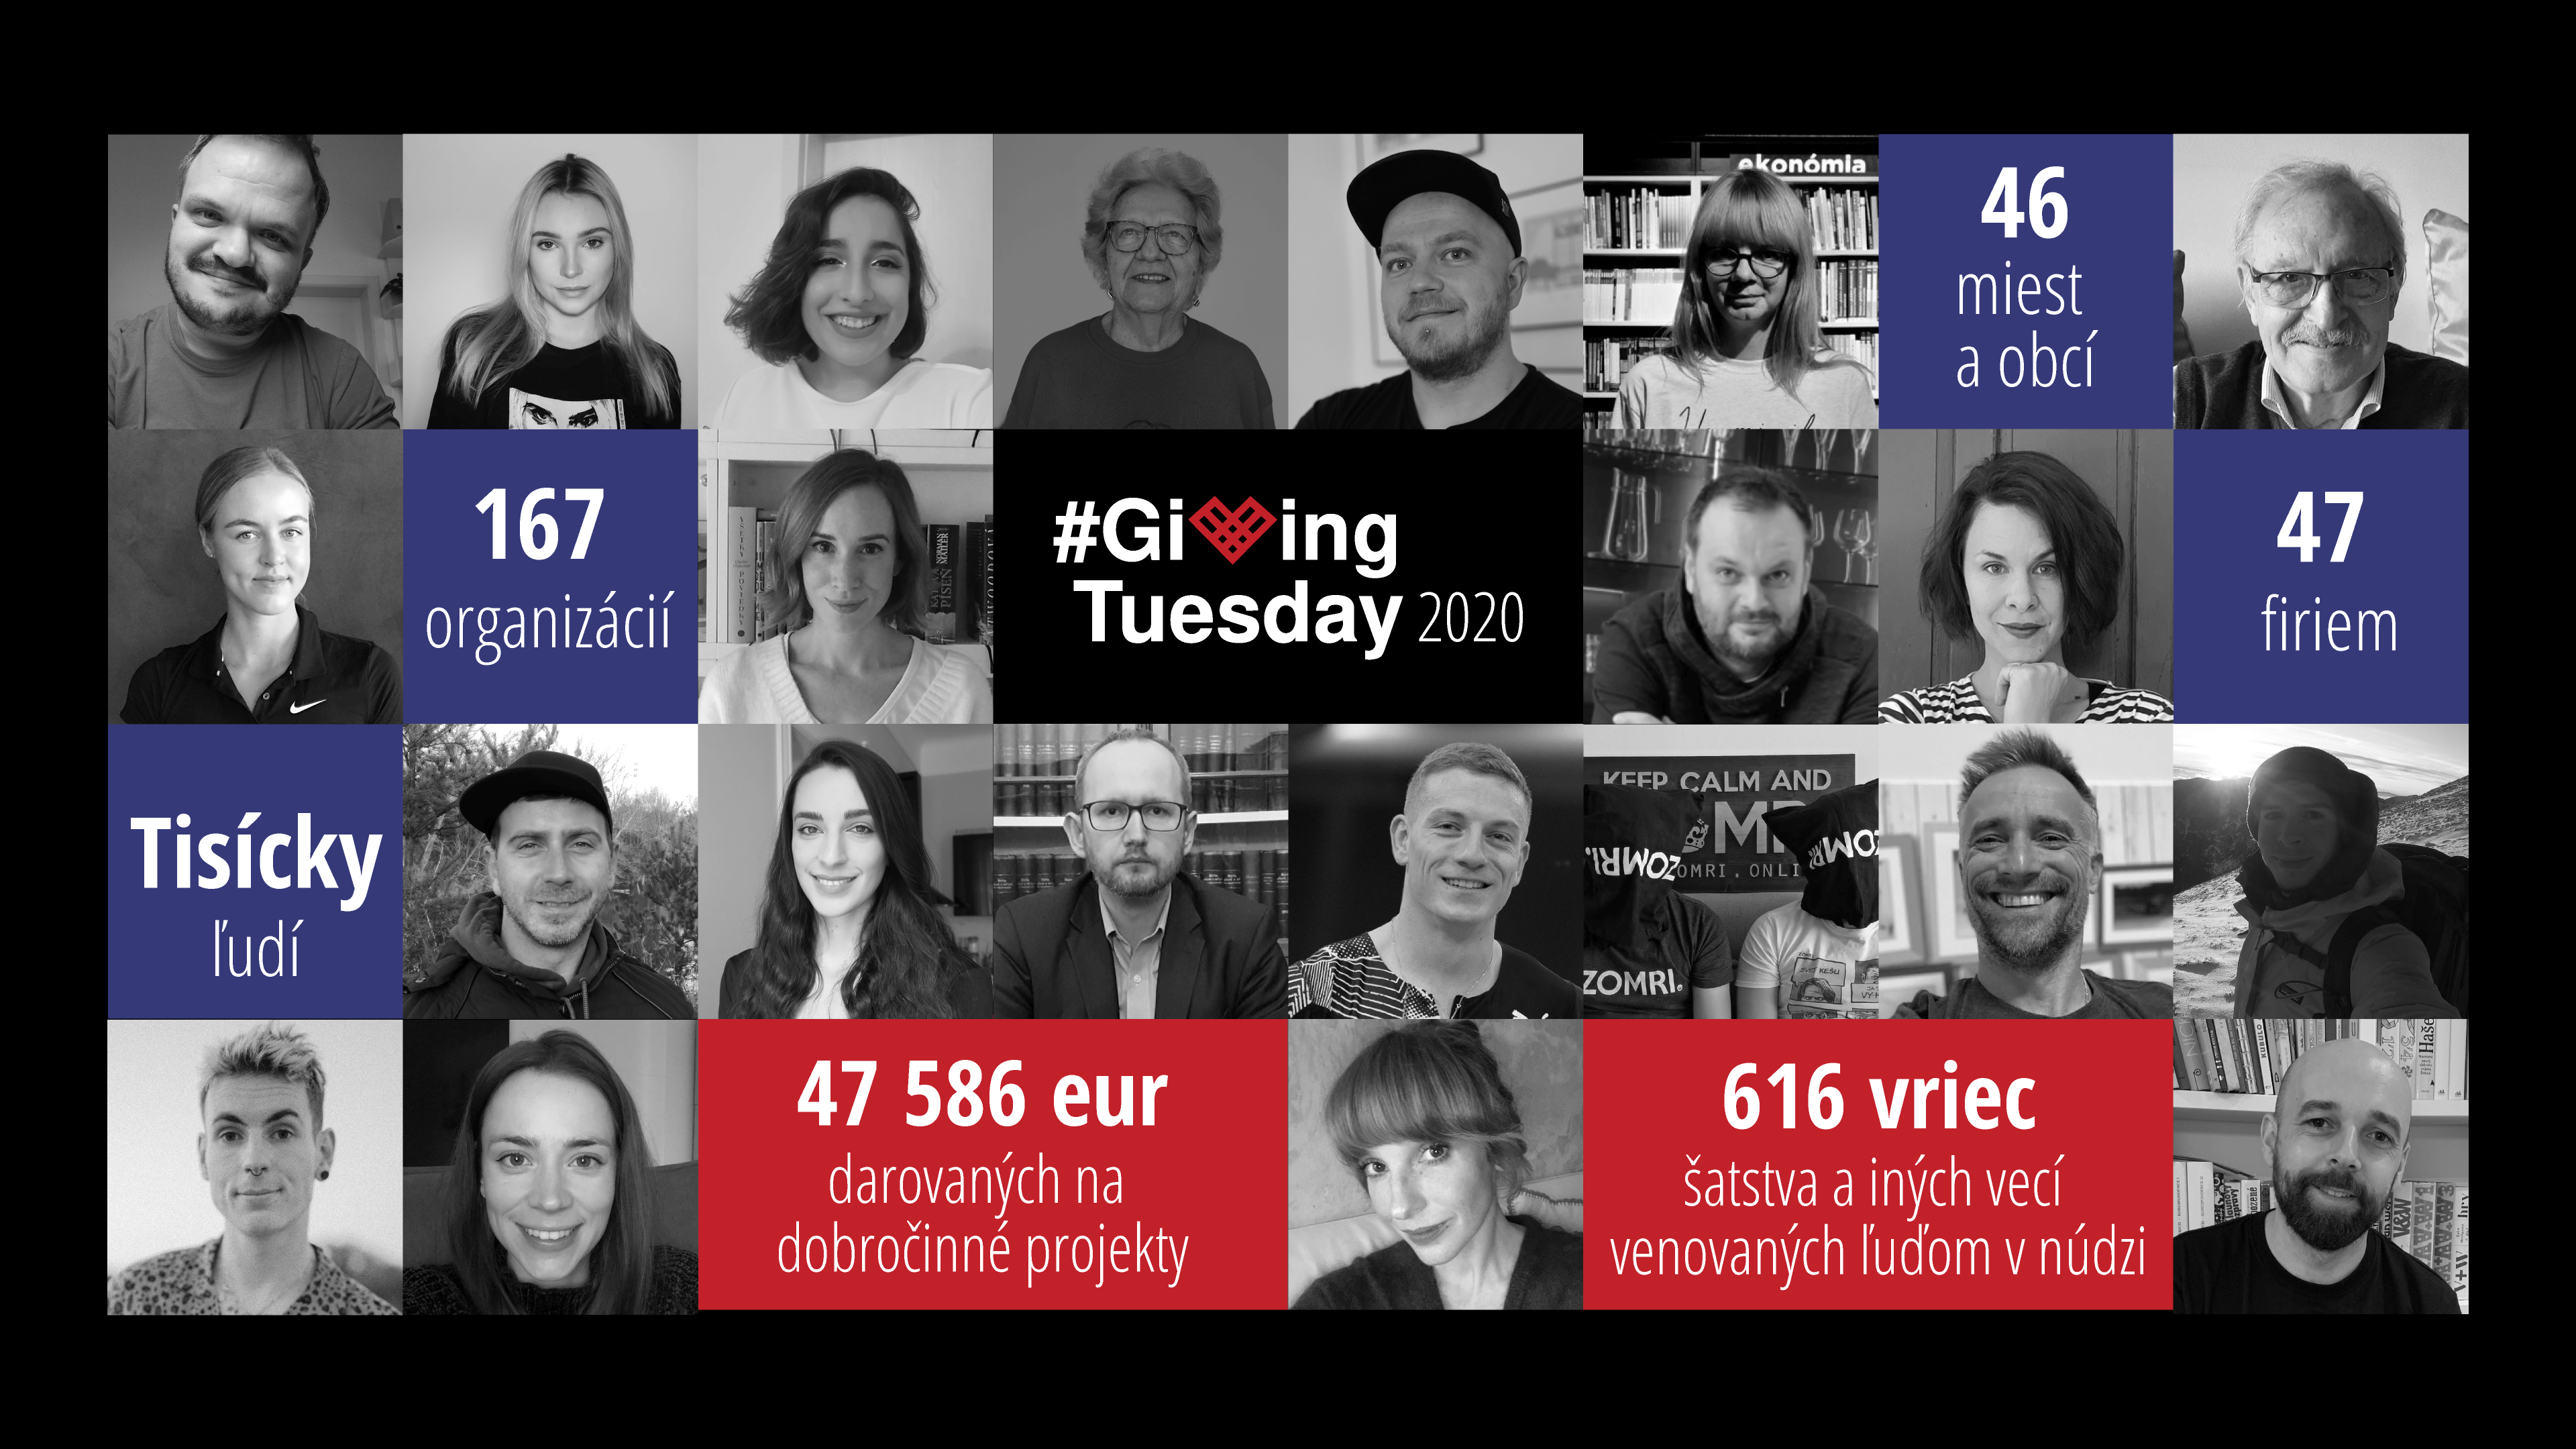 Počas #GivingTuesday sa vyzbieralo takmer 50-tisíc eur